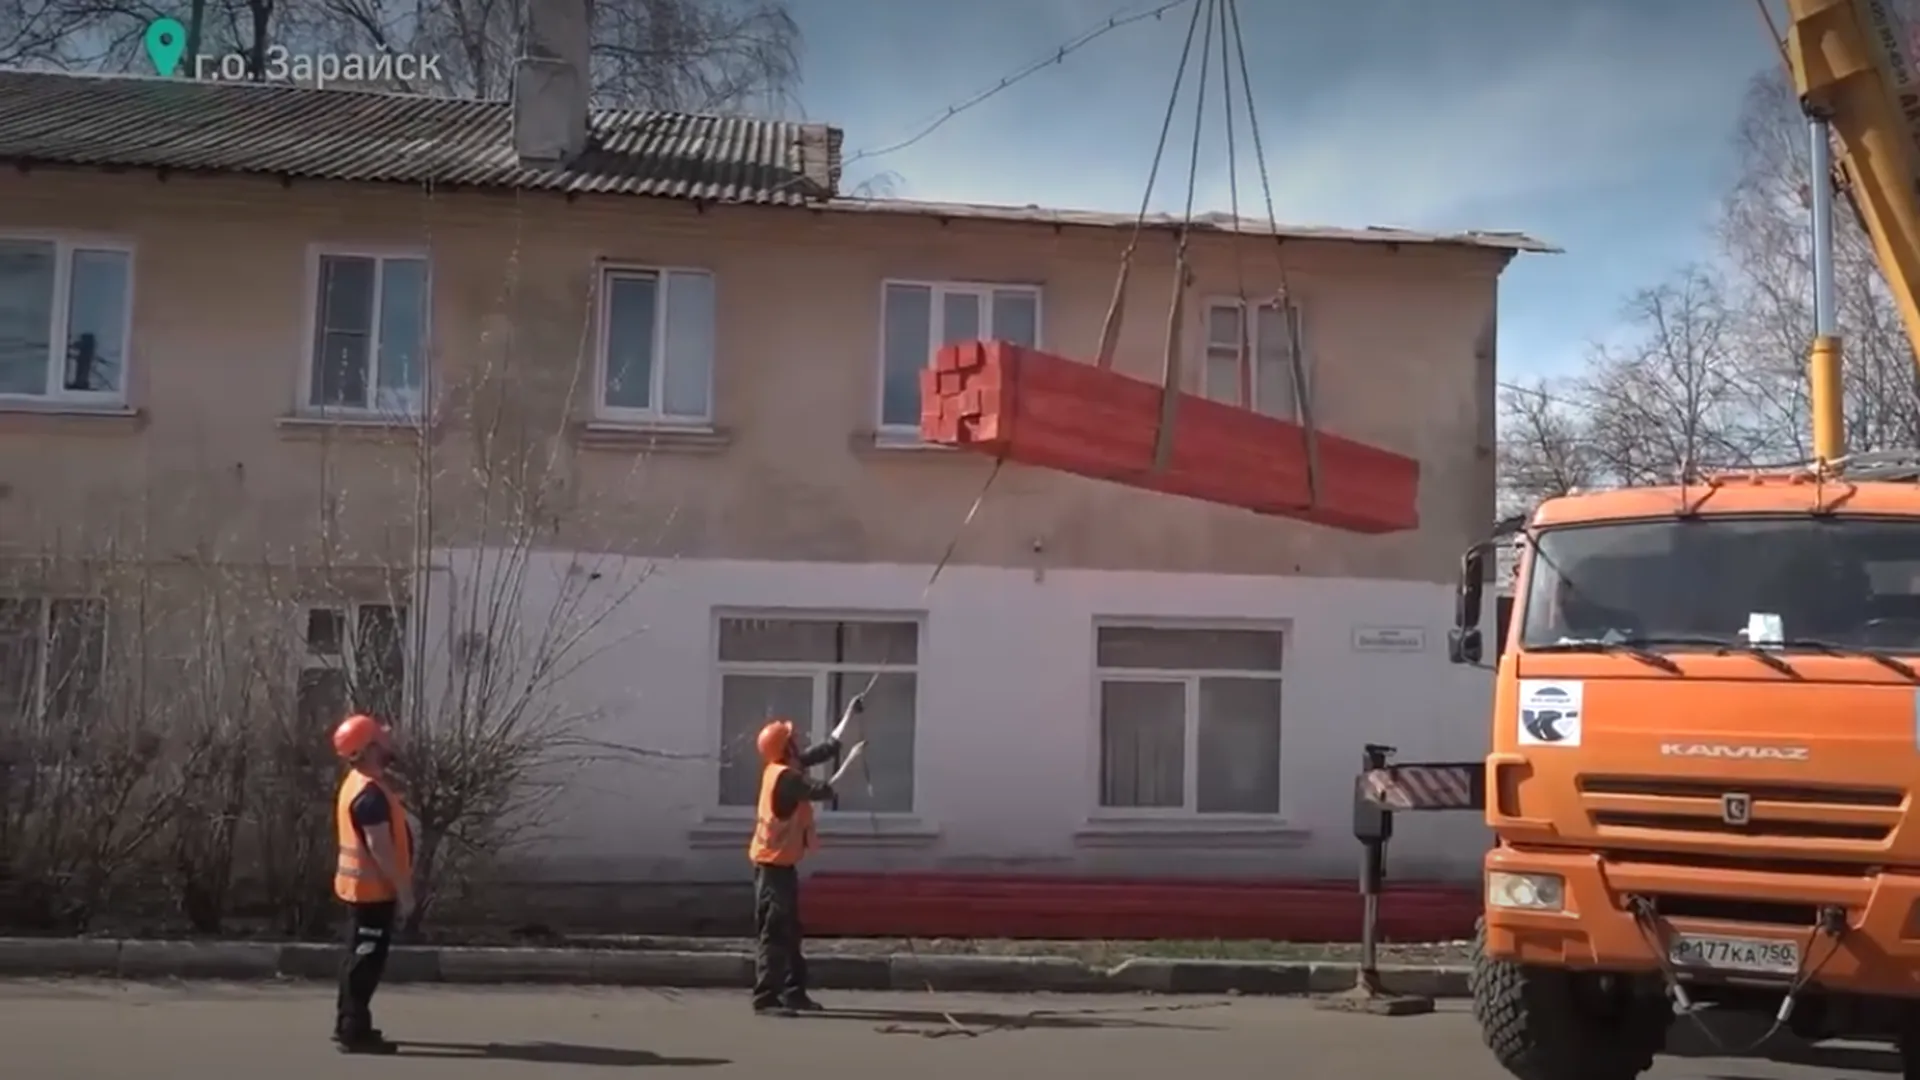 Свыше 40 домов отремонтируют в Зарайске в 2024 году